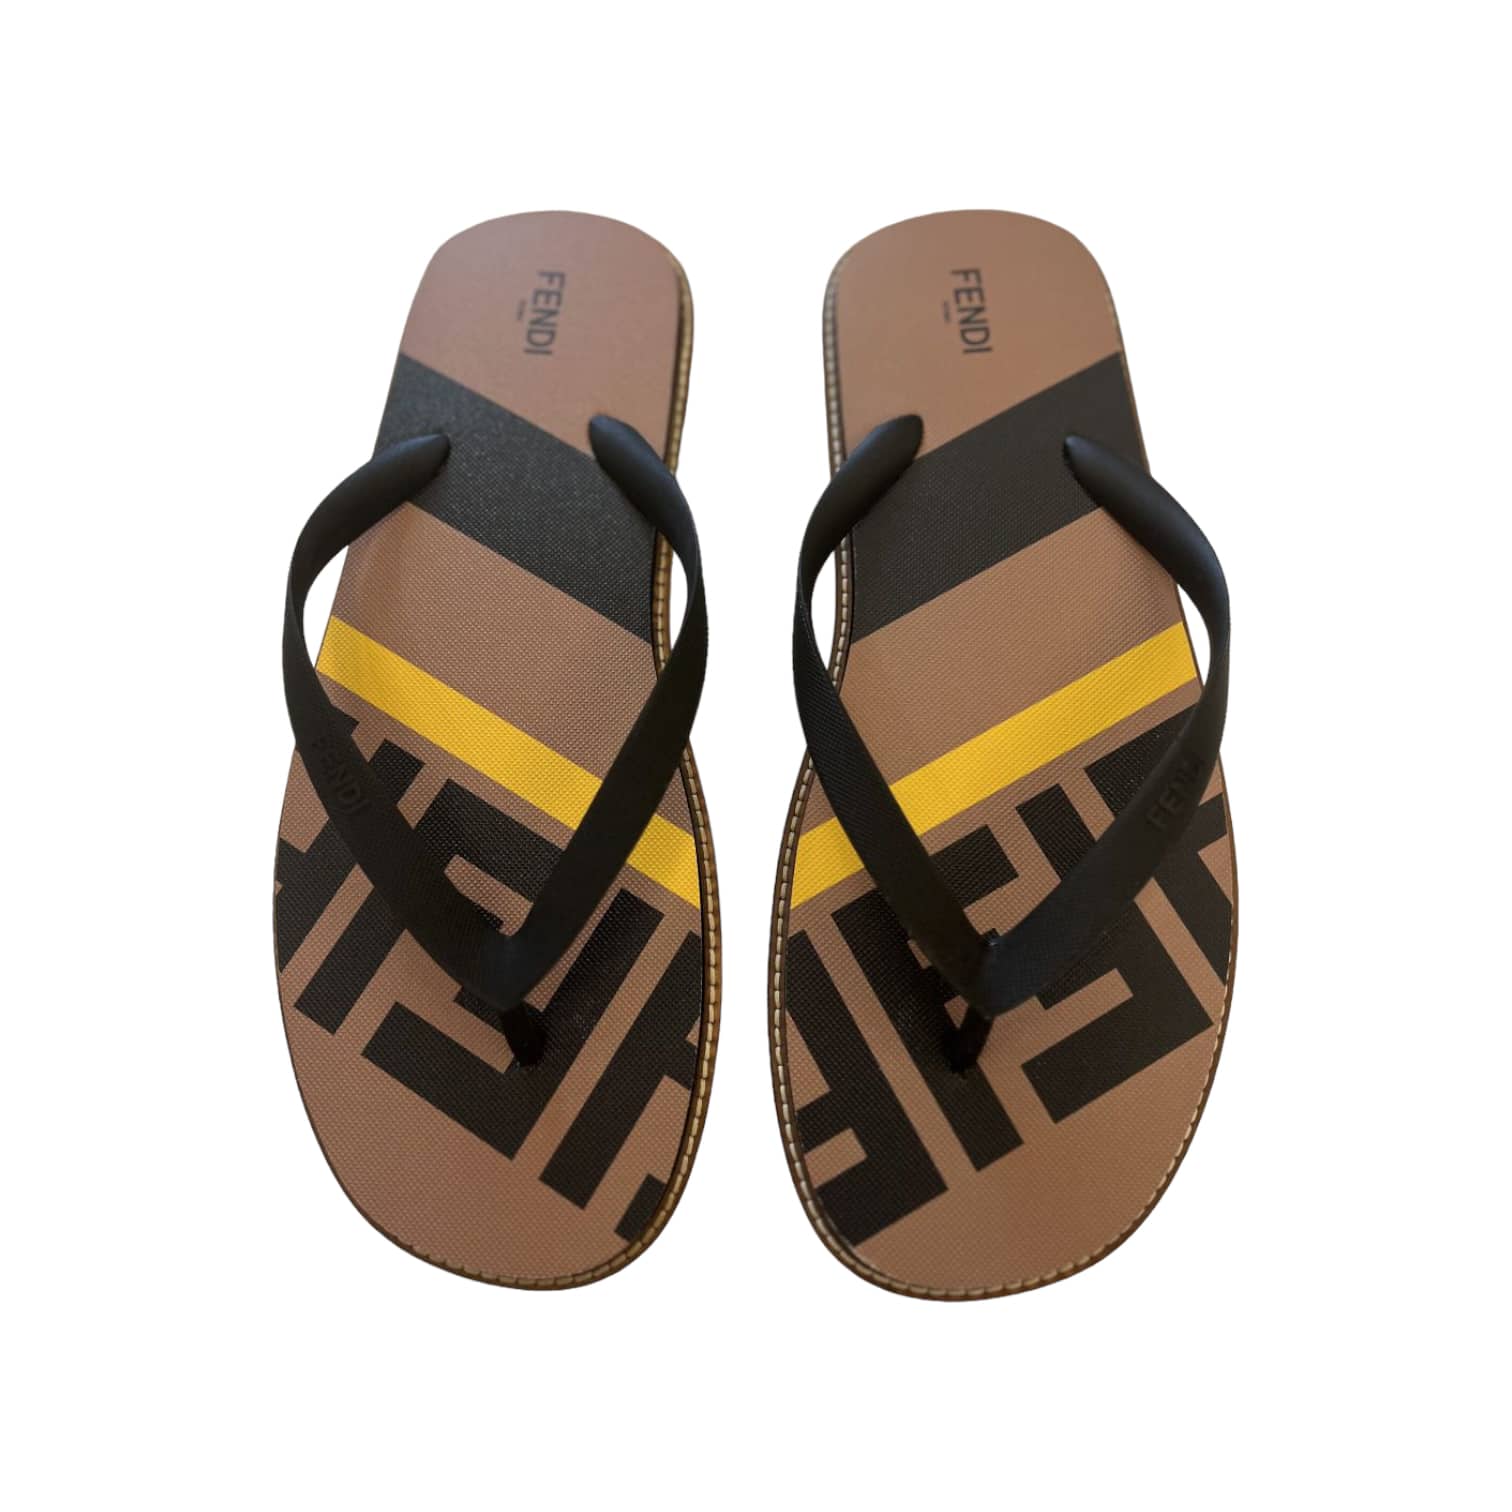 Fendi flip flop Men’s sandal size 46 EU - The Luxury Flavor